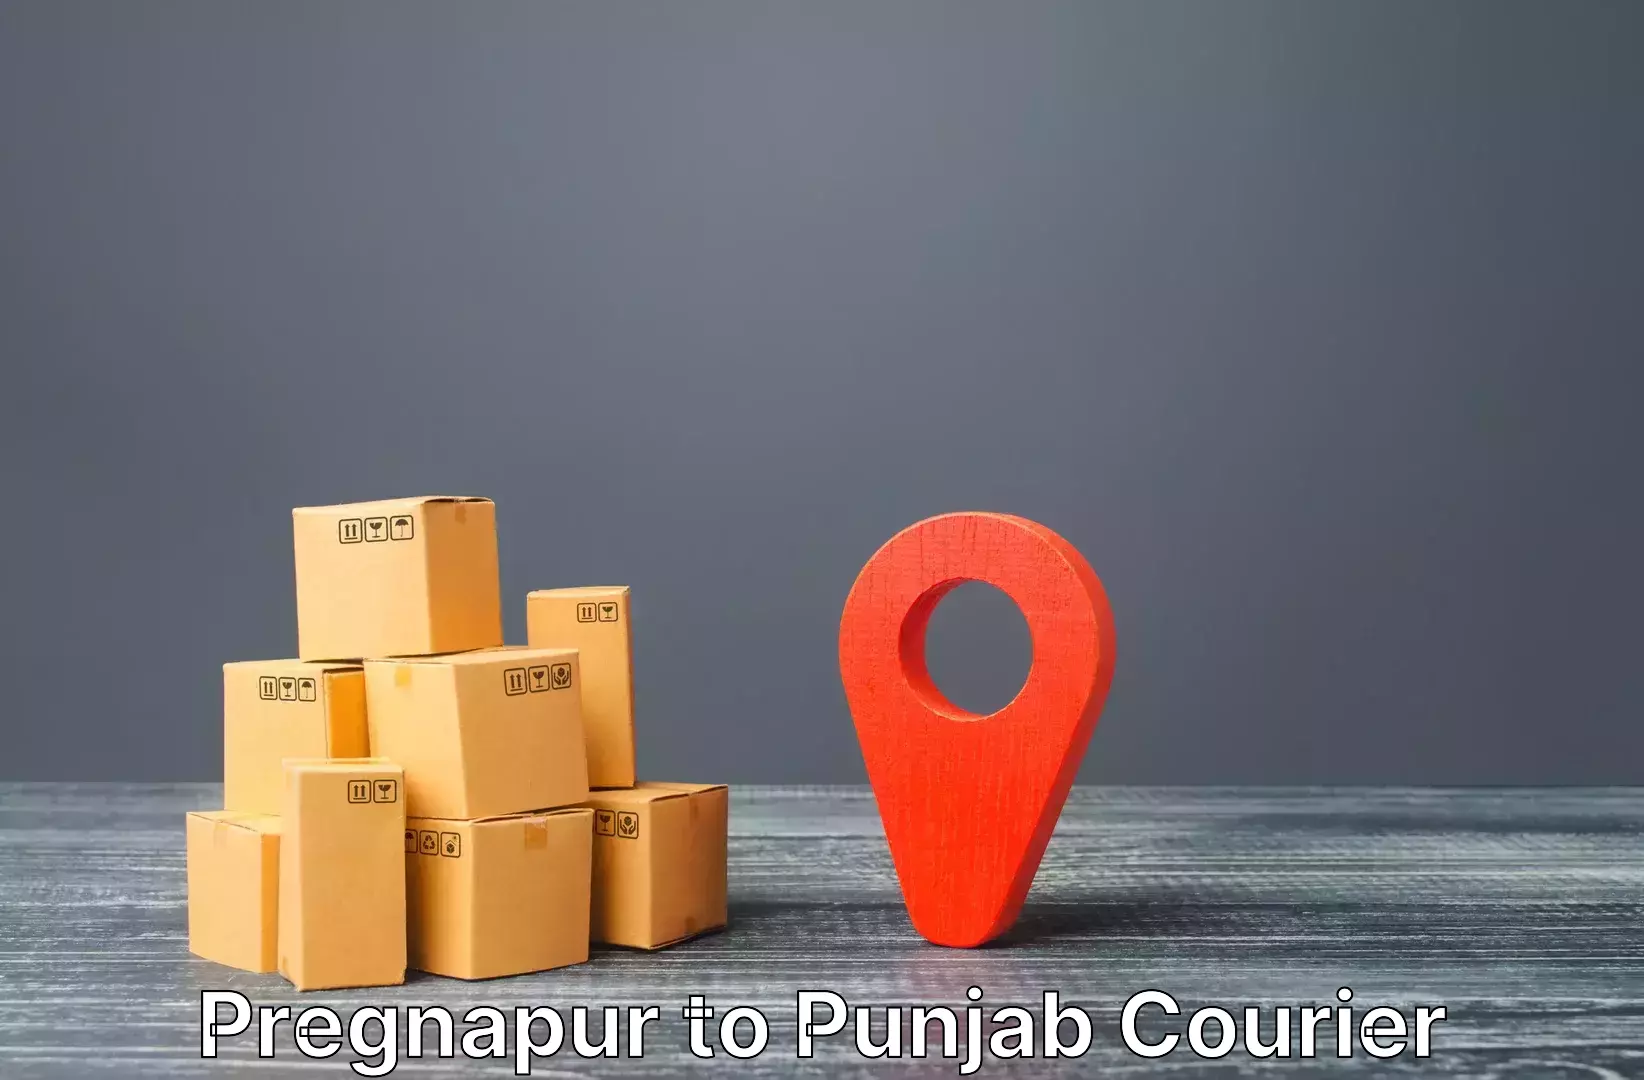 Luggage delivery providers Pregnapur to Dhuri